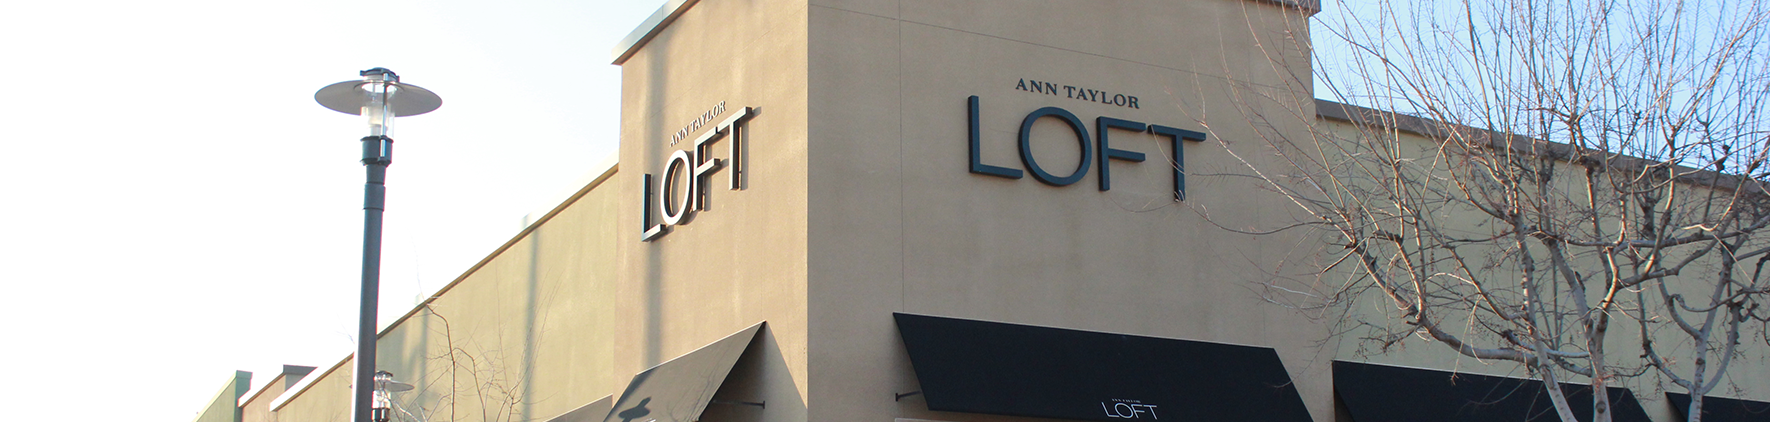 Ann Taylor Loft River Park Shopping [ 422 x 1770 Pixel ]